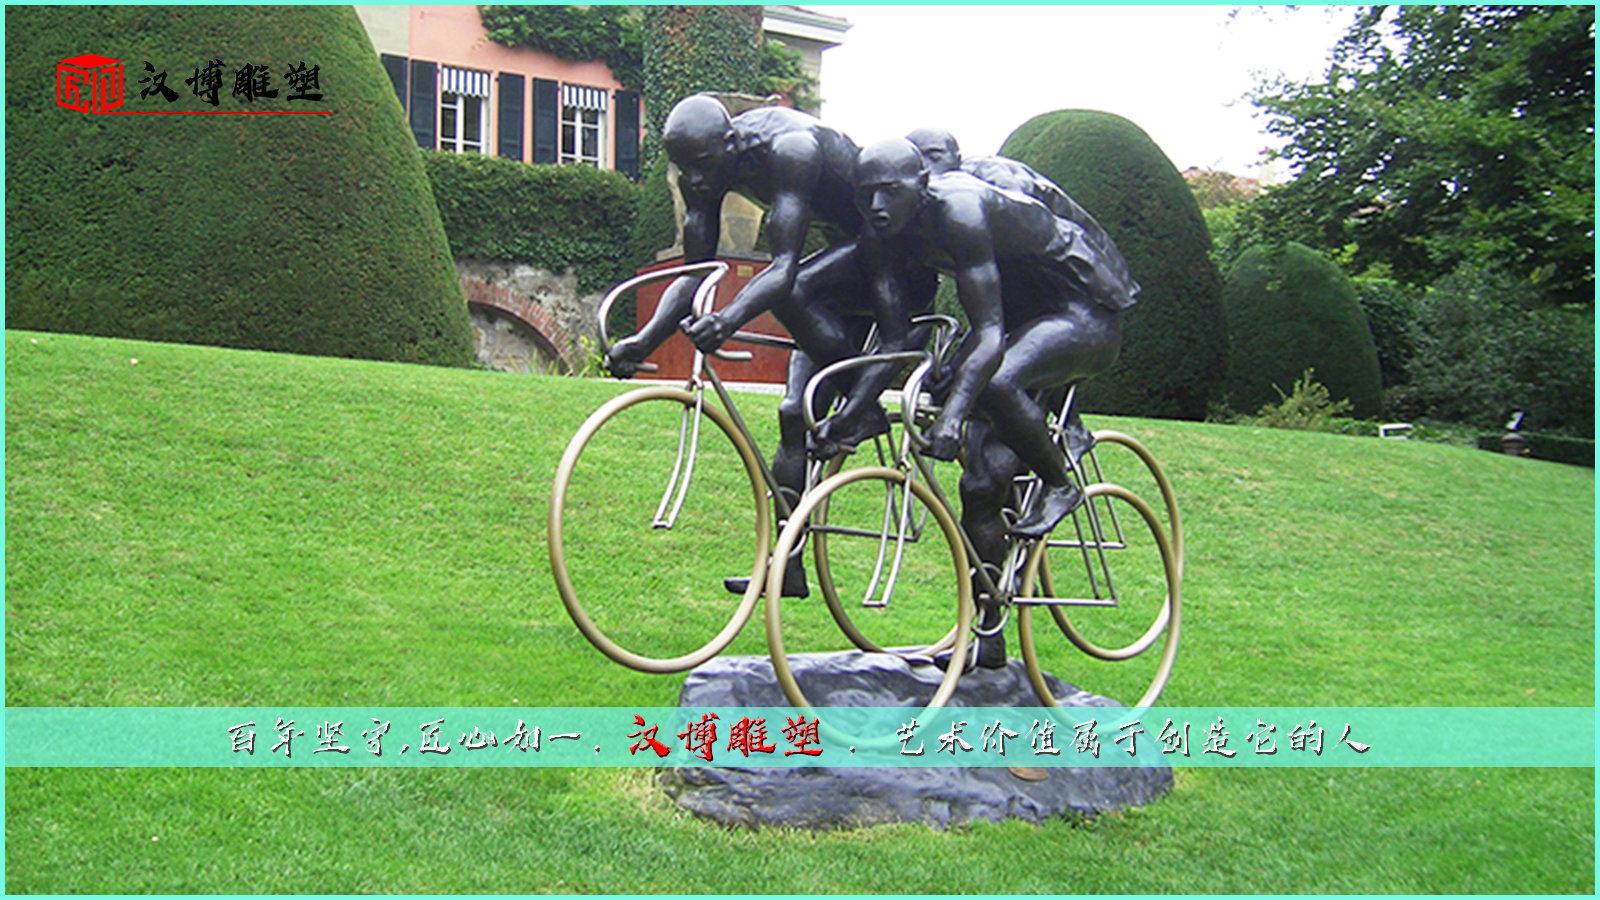 人物铜雕,运动主题雕塑,园林景观雕塑